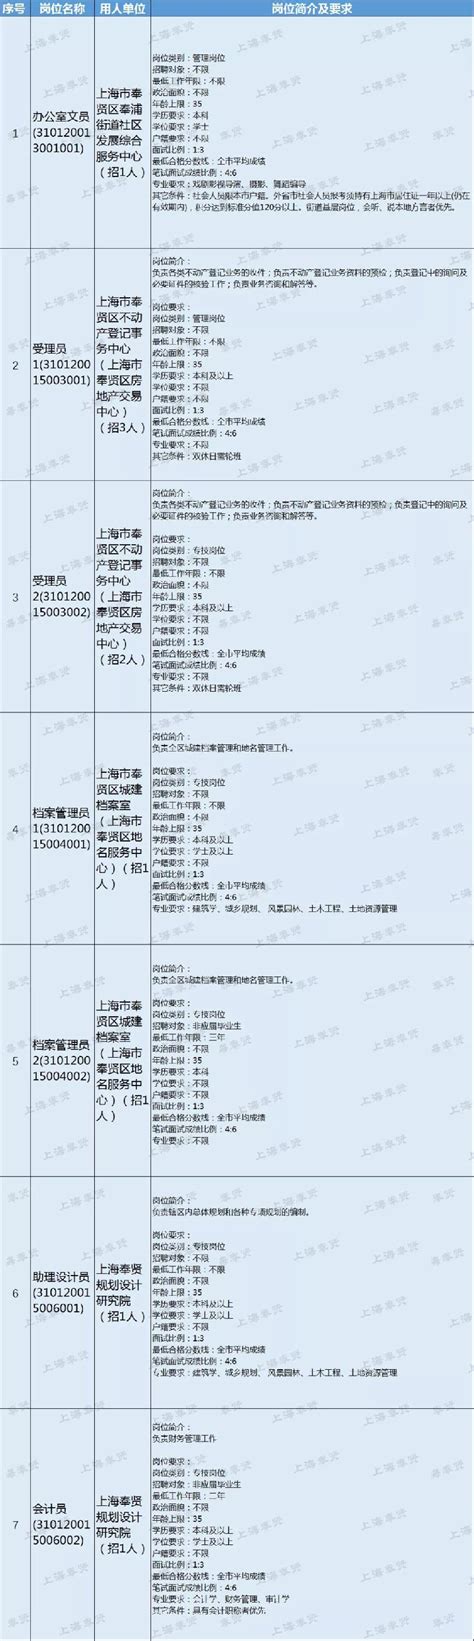 2023年度上海奉贤区第二批教师招聘报名有关事项预告（3月31日起报名）